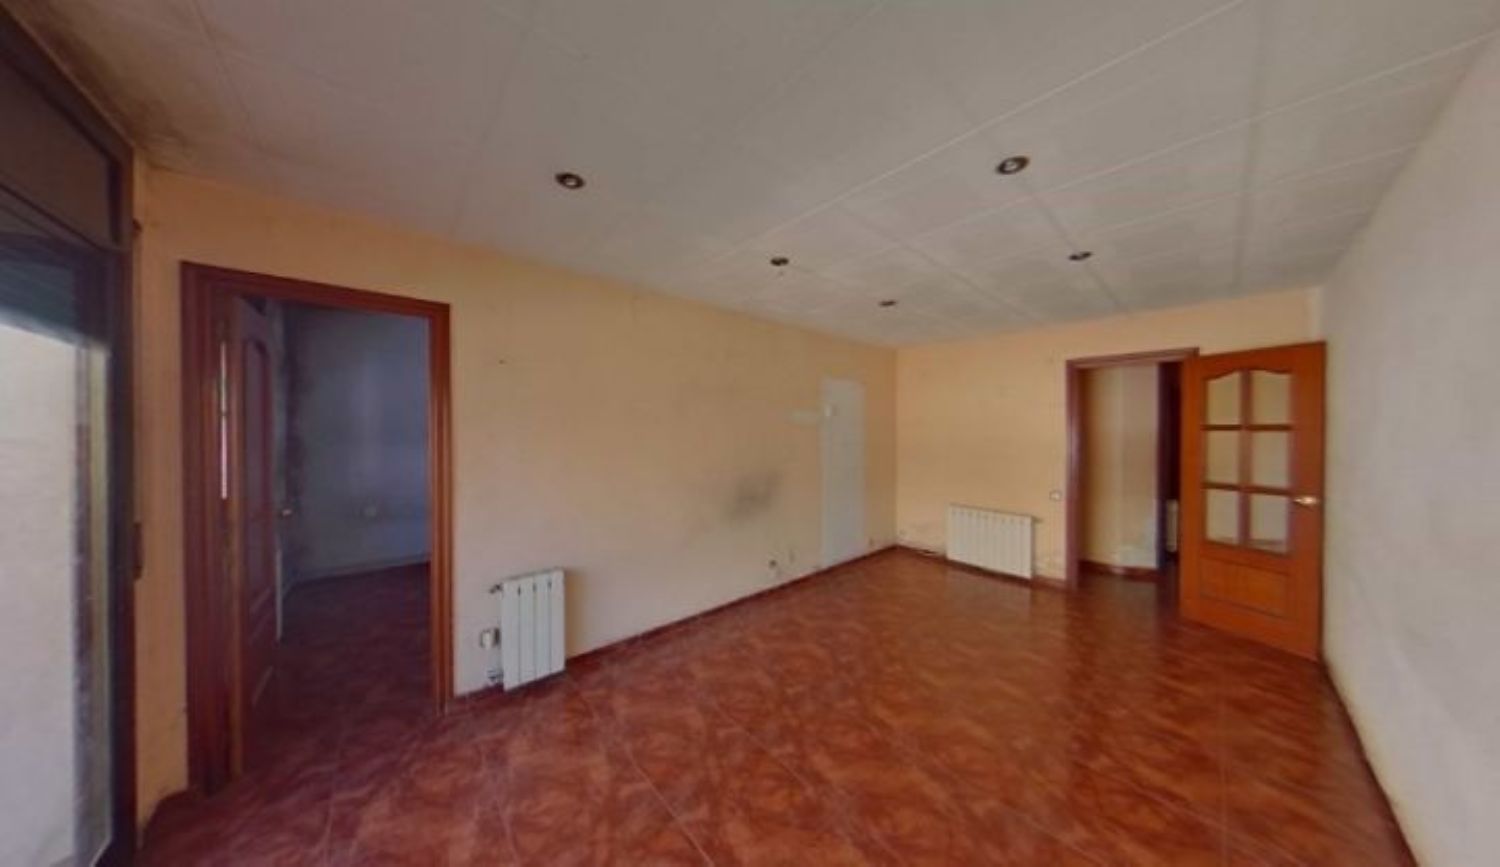 Flat, 81.00 m², Instituts - Ponent